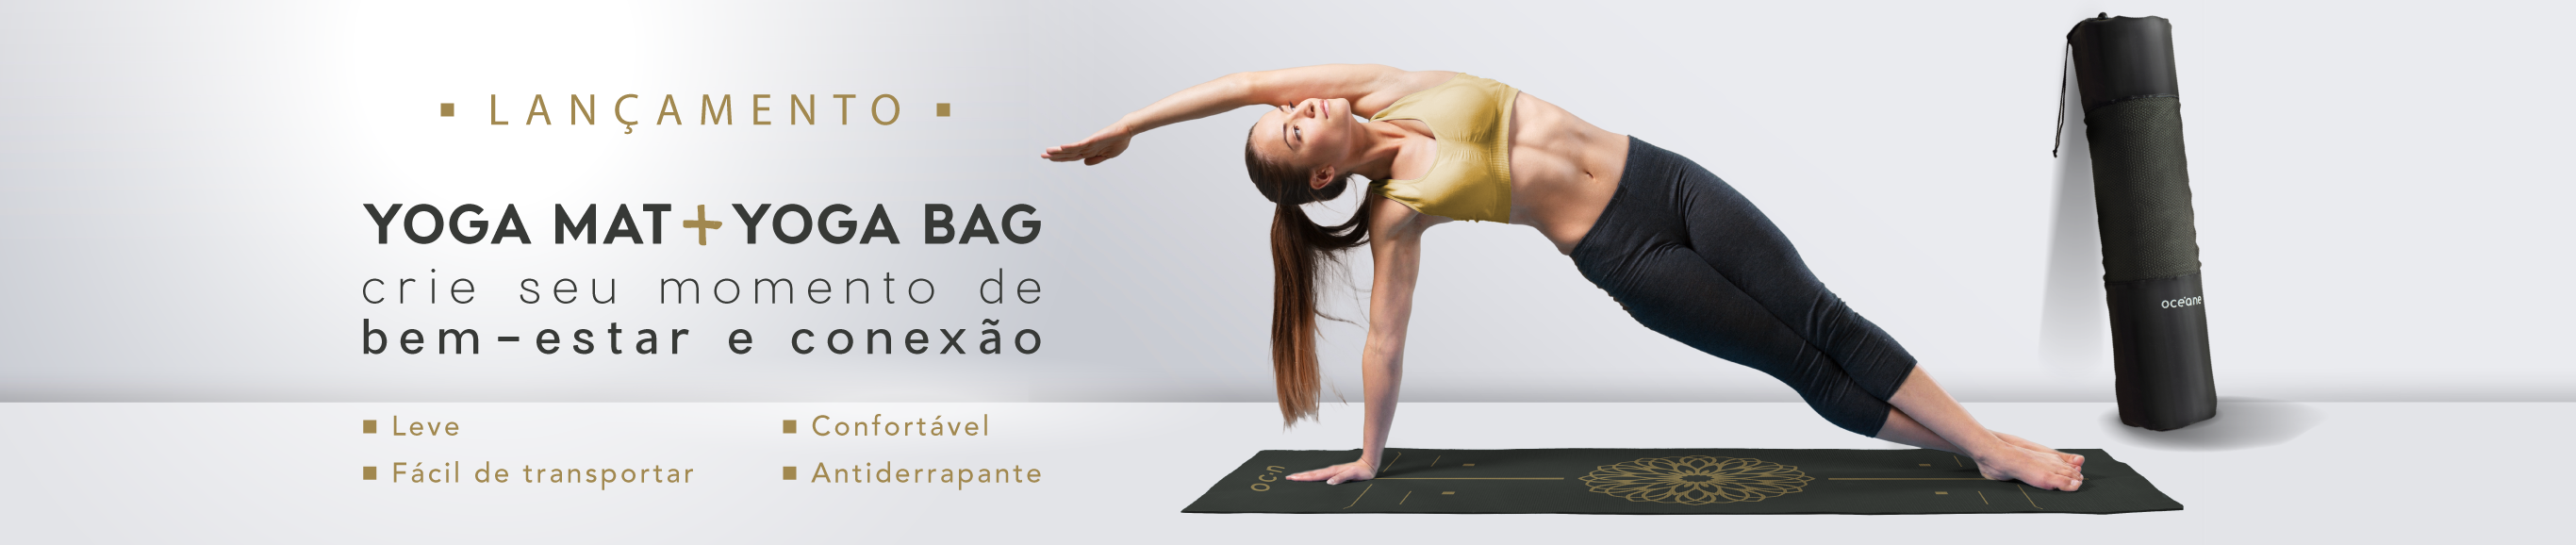 Banner lançamento produtos de yoga, a imagem mostra uma modelo usando o tapete para yoga para praticar a atividade física e a bolsa de yoga ao fundo